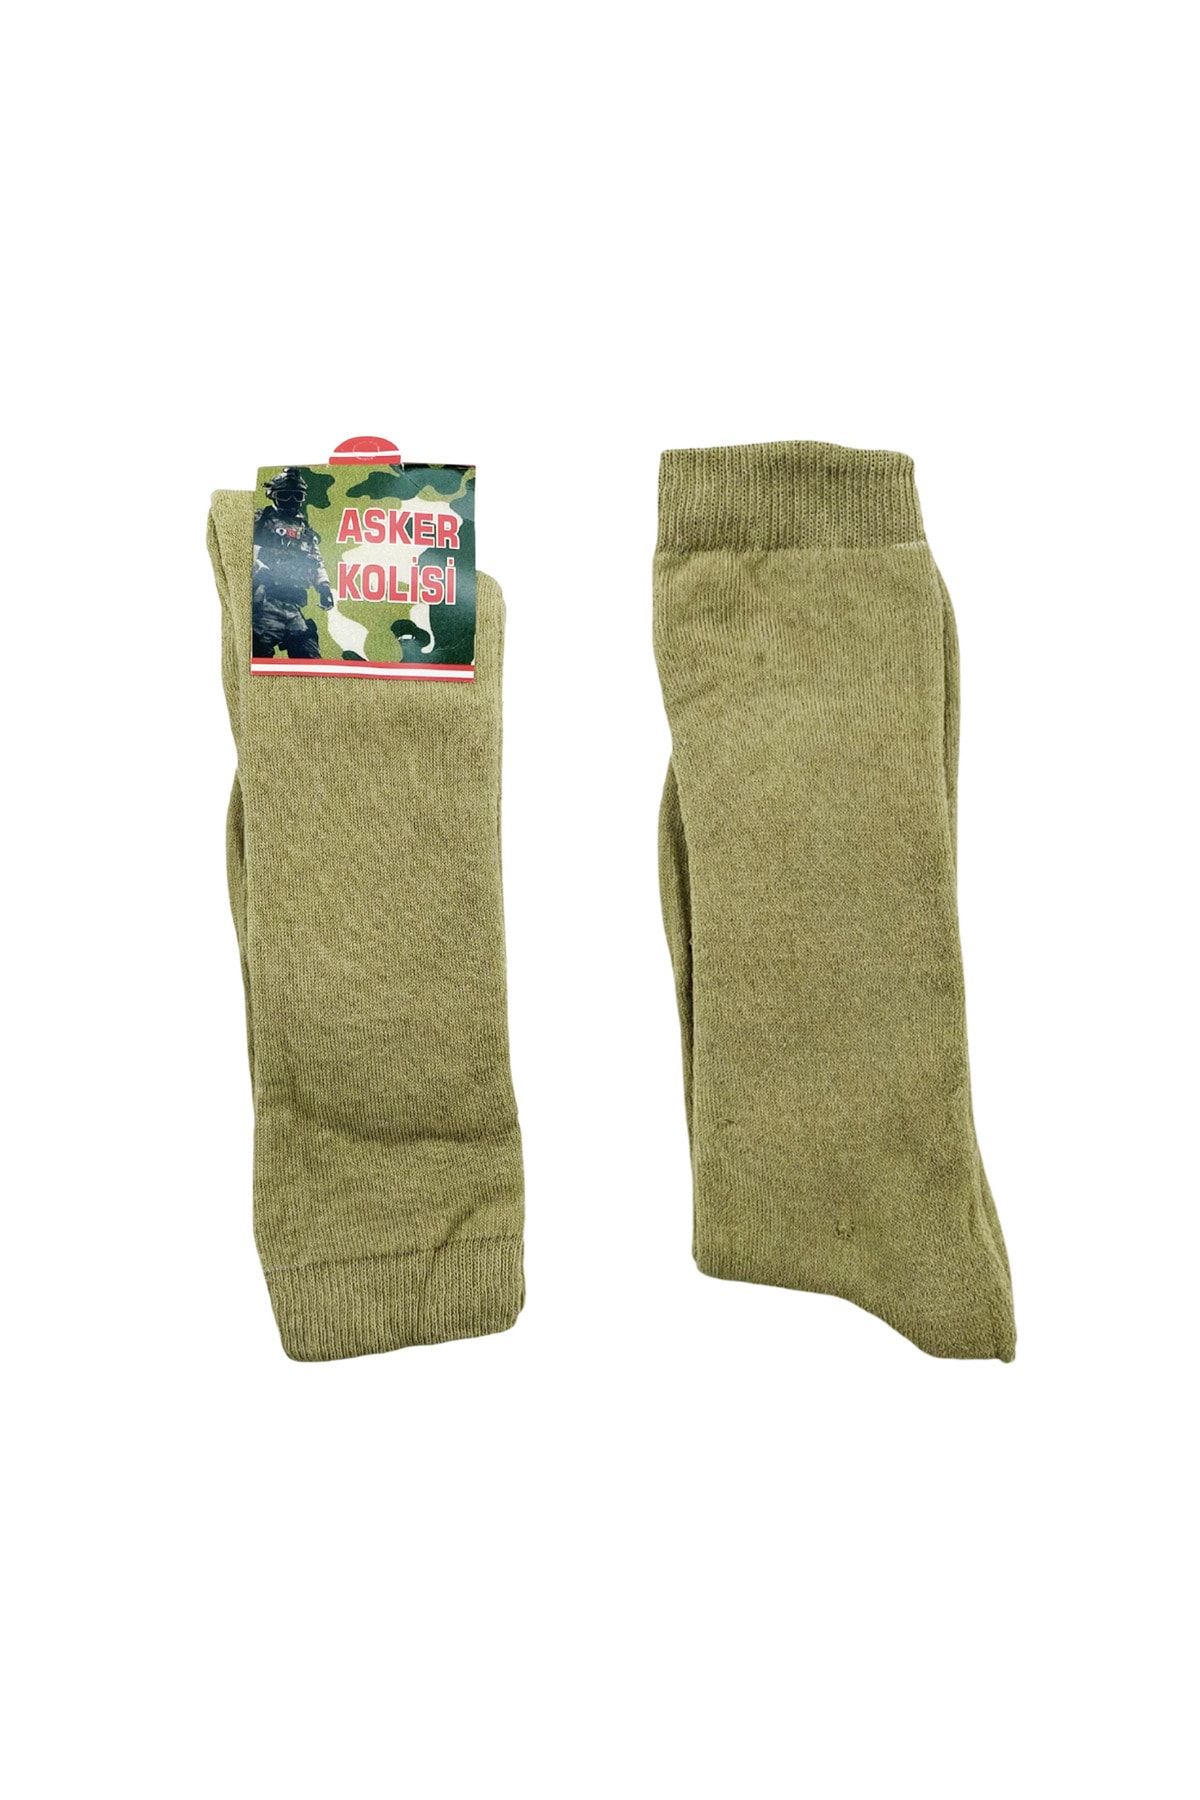 Asker Kolisi Kışlık Askeri Havlu Çorap - Asker Malzemeleri - Kışlık Asker Çorabı